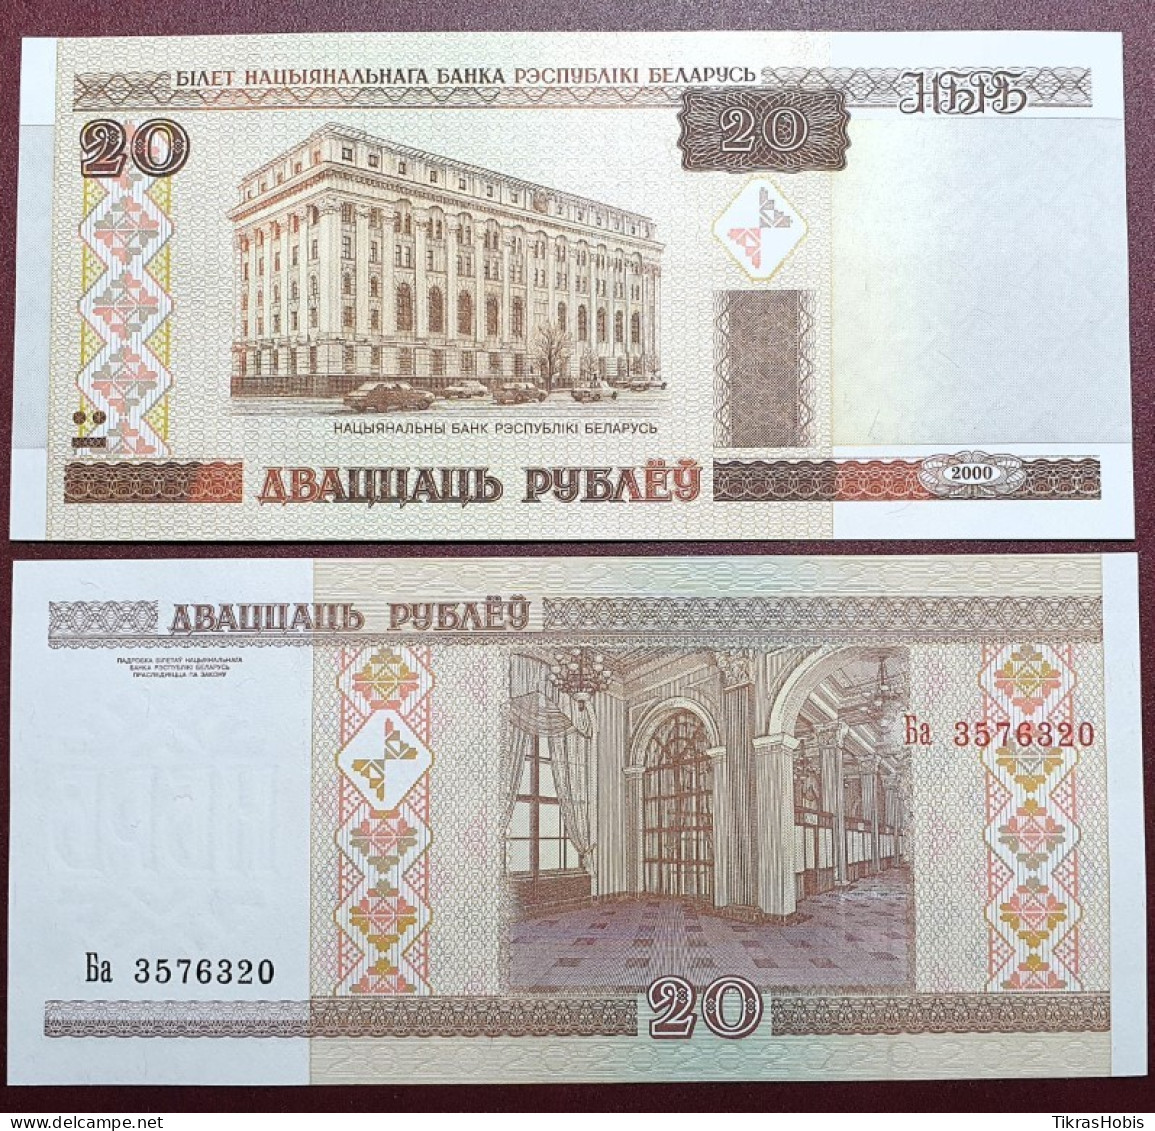 Belarus 20 Rubles, 2000 P-24a.1 - Belarus